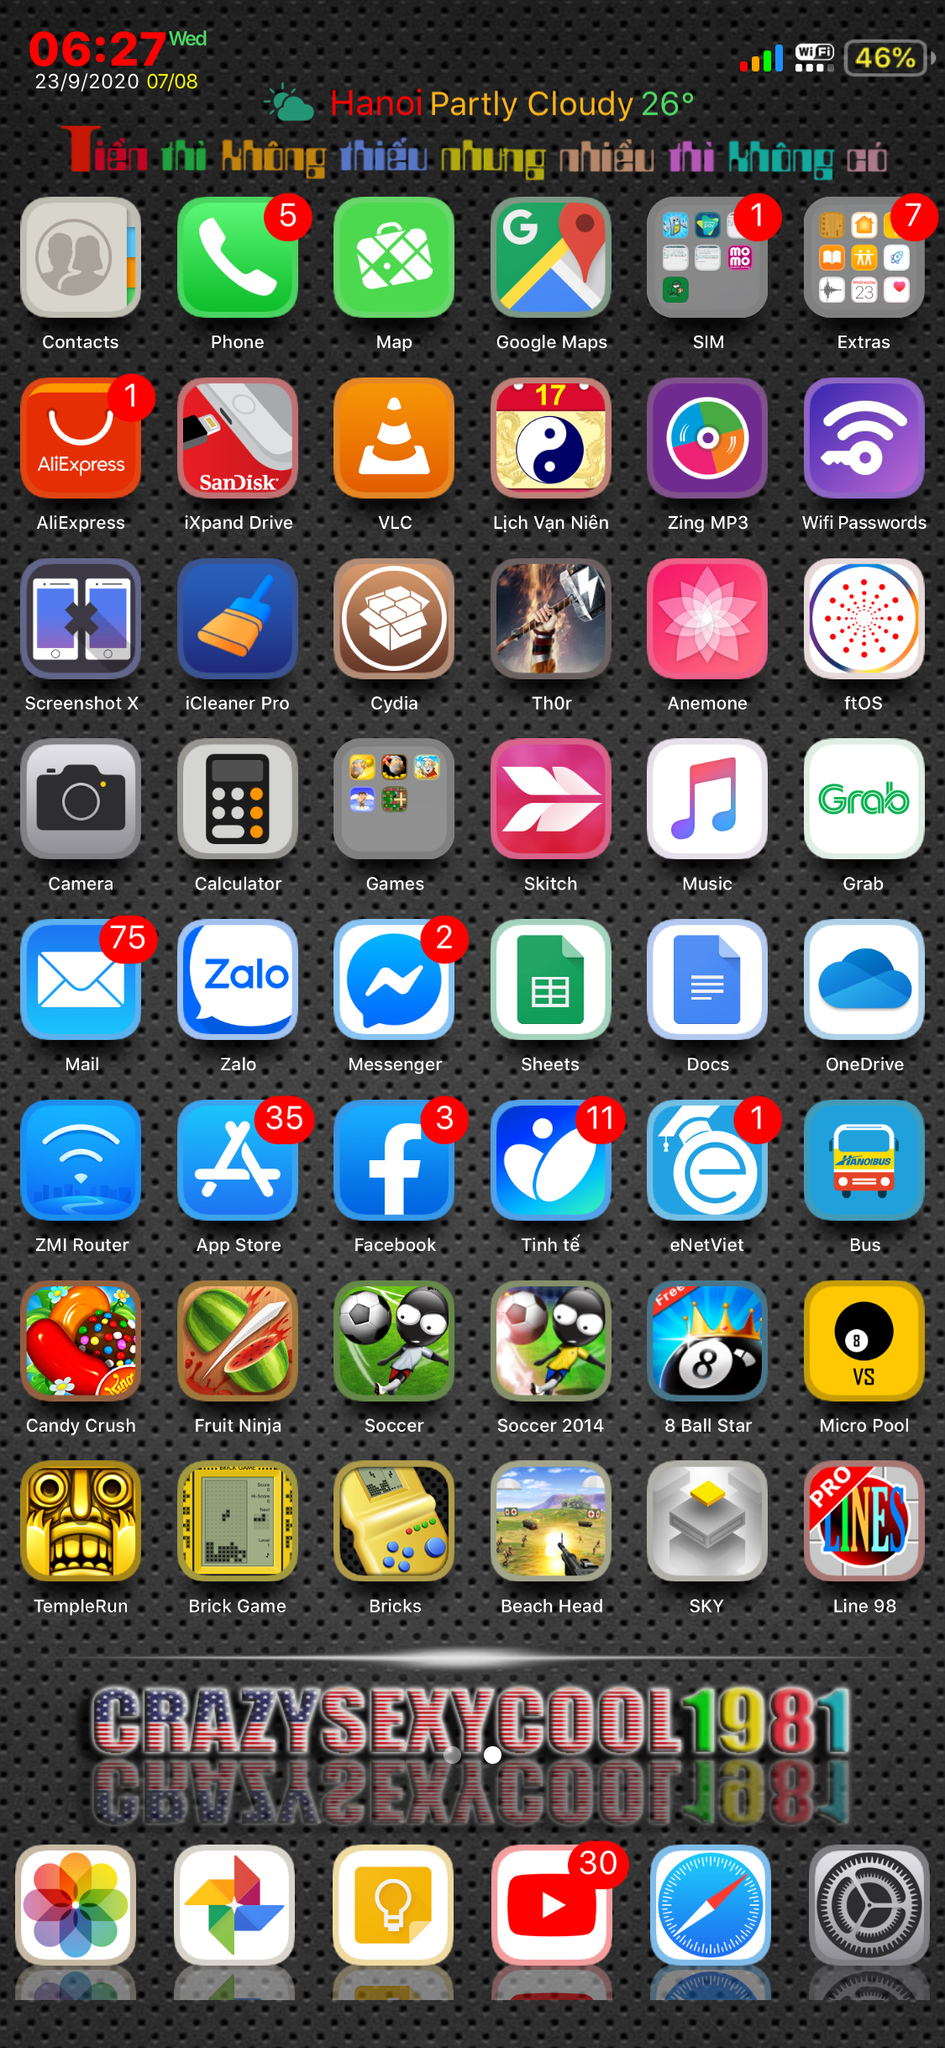 Cách ẩn khung nền của thanh dock trên iPhone sử dụng phiên bản iOS 11